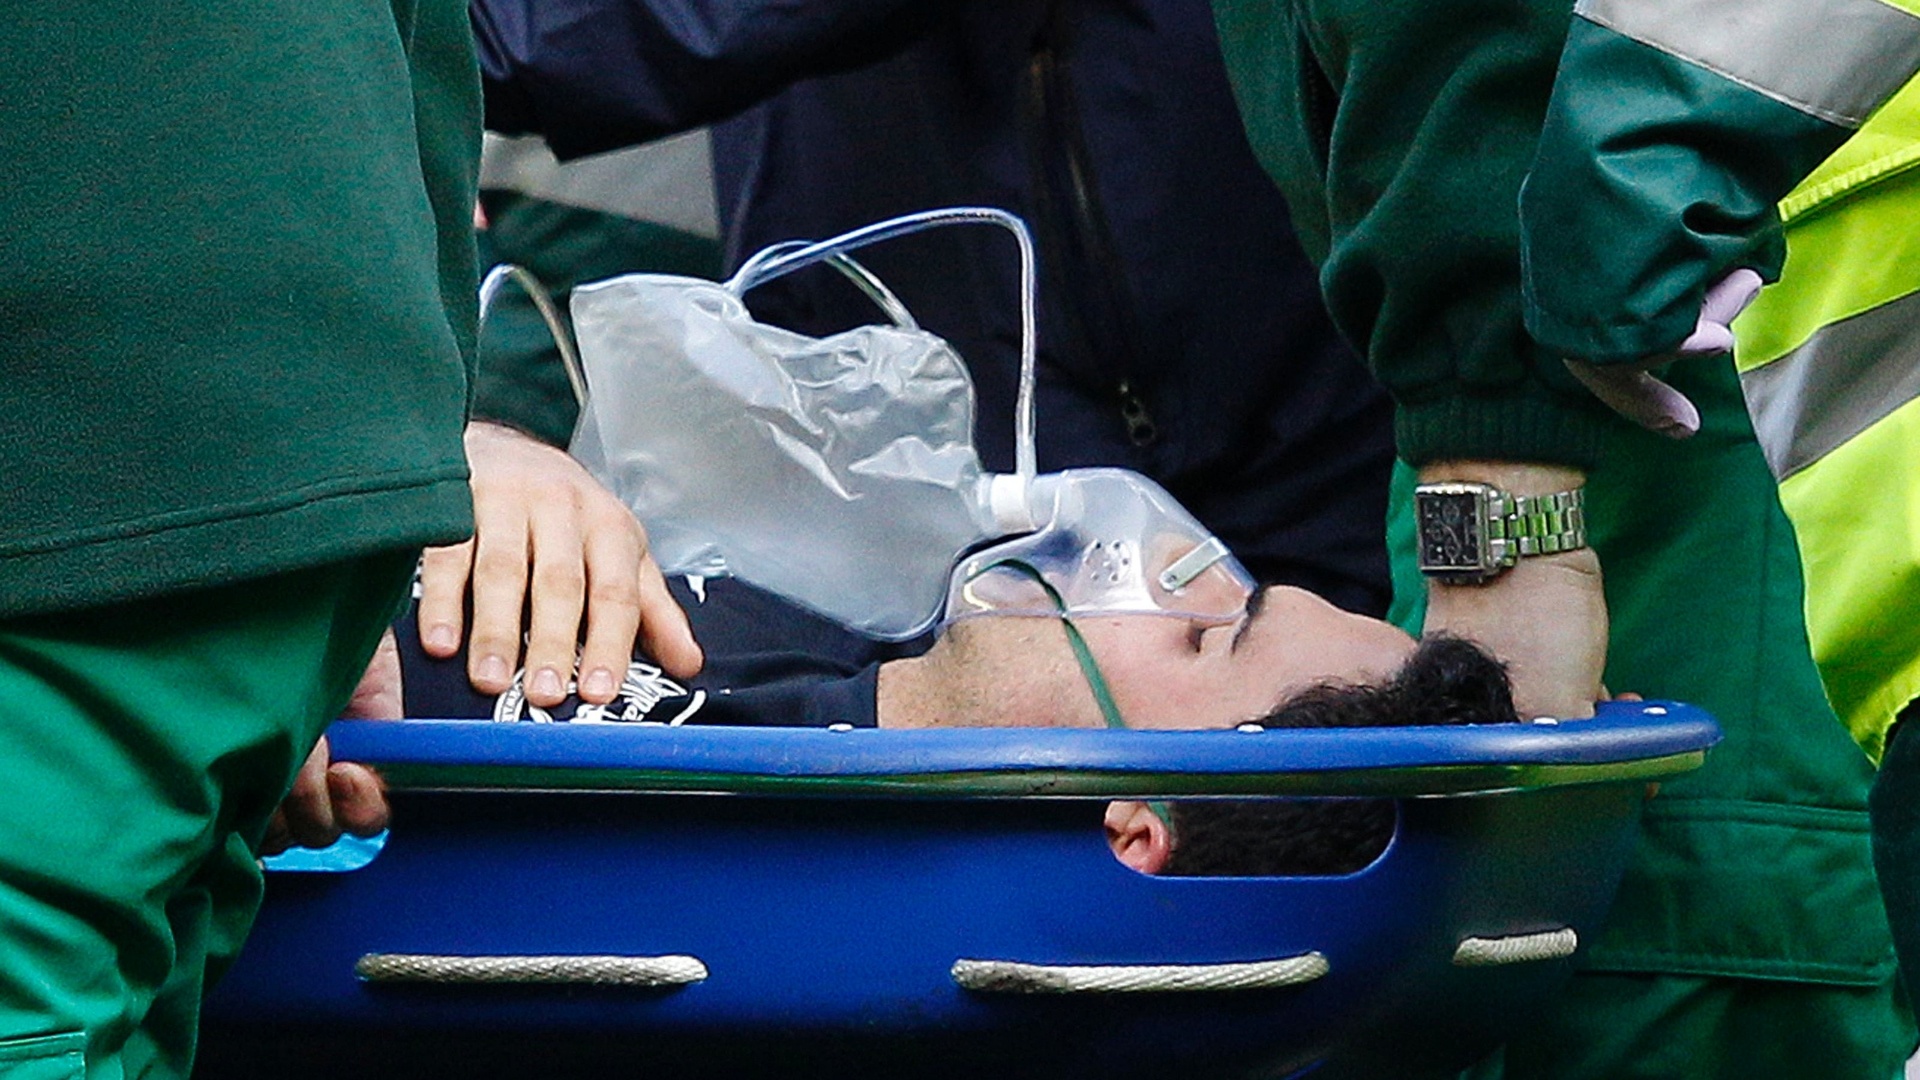 03.mar.2012 - Mikel Arteta, do Arsenal, sai de maca após choque durante disputa de bola em jogo contra o Liverpool, pelo Campeonato Inglês